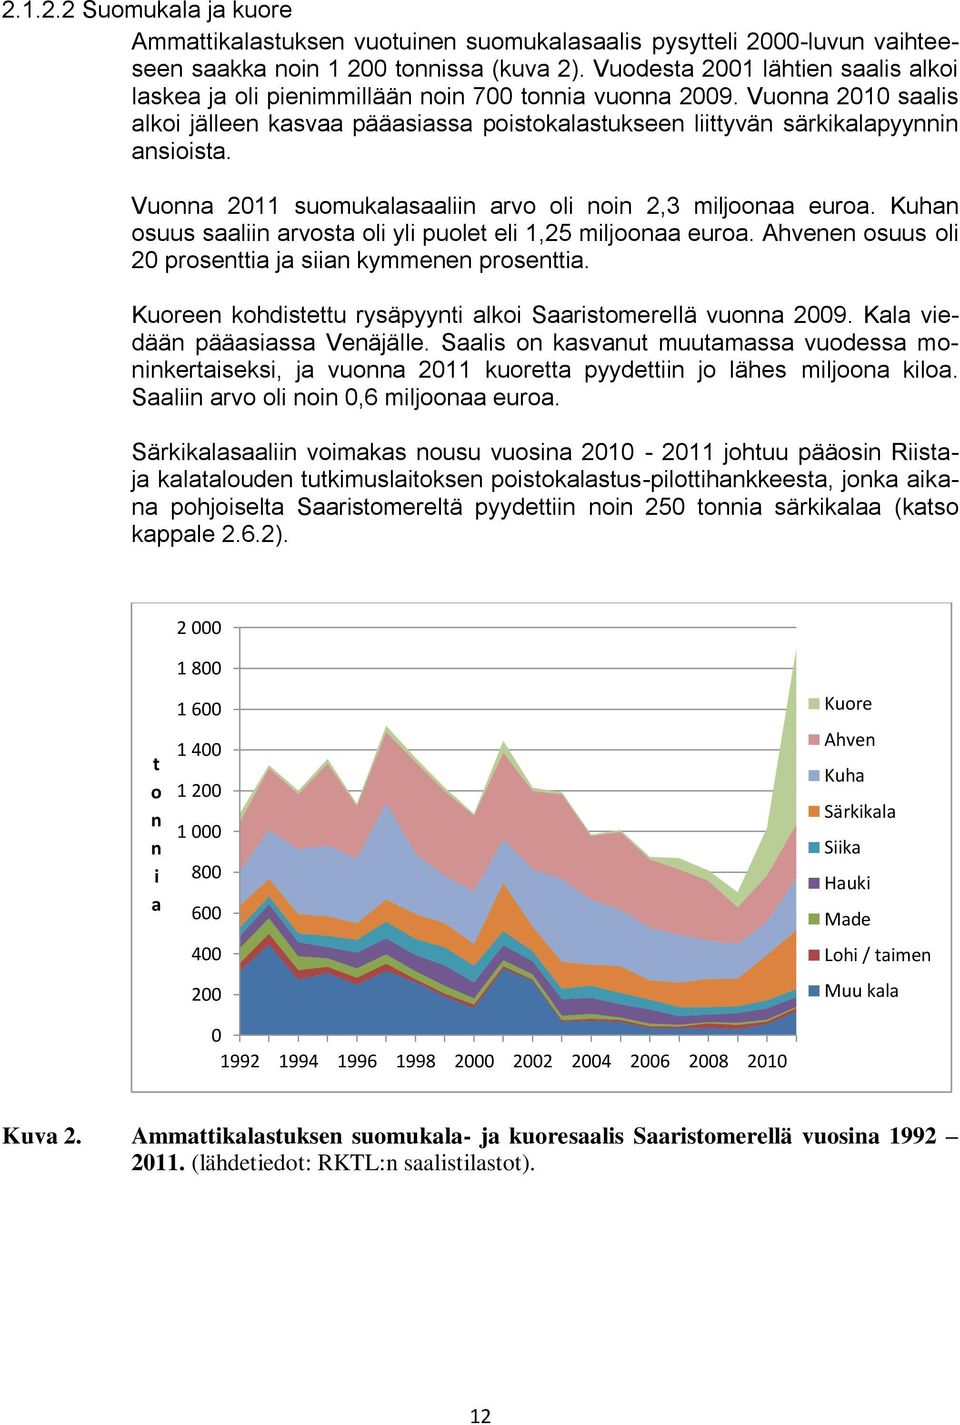 Vuonna 2011 suomukalasaaliin arvo oli noin 2,3 miljoonaa euroa. Kuhan osuus saaliin arvosta oli yli puolet eli 1,25 miljoonaa euroa. Ahvenen osuus oli 20 prosenttia ja siian kymmenen prosenttia.